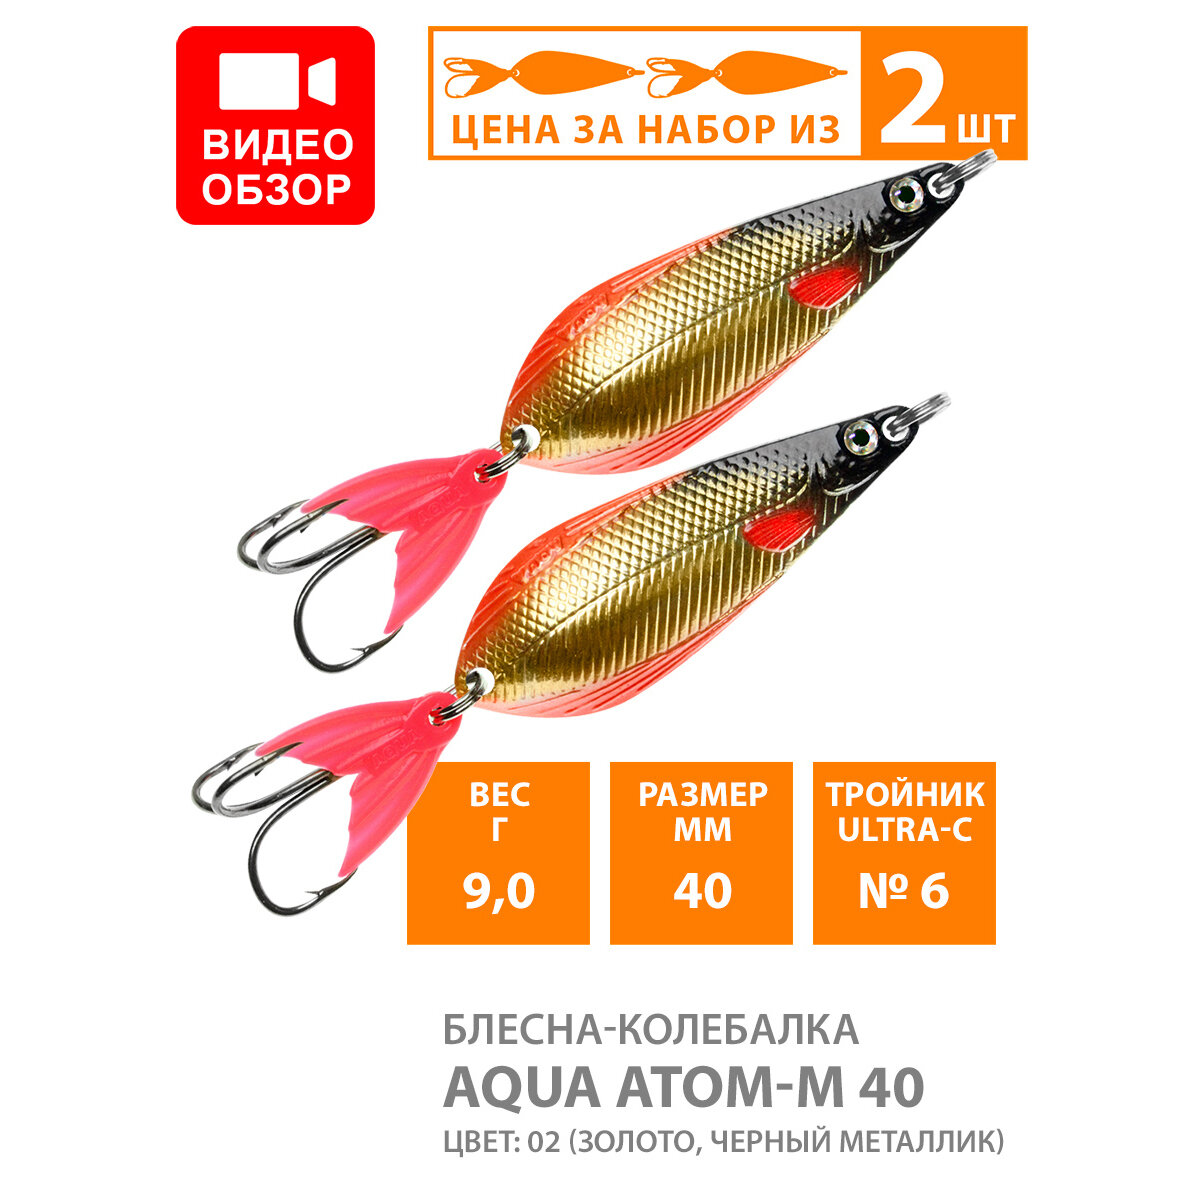 Блесна колебалка для рыбалки AQUA Атом M 40mm 9g цвет 02 2шт